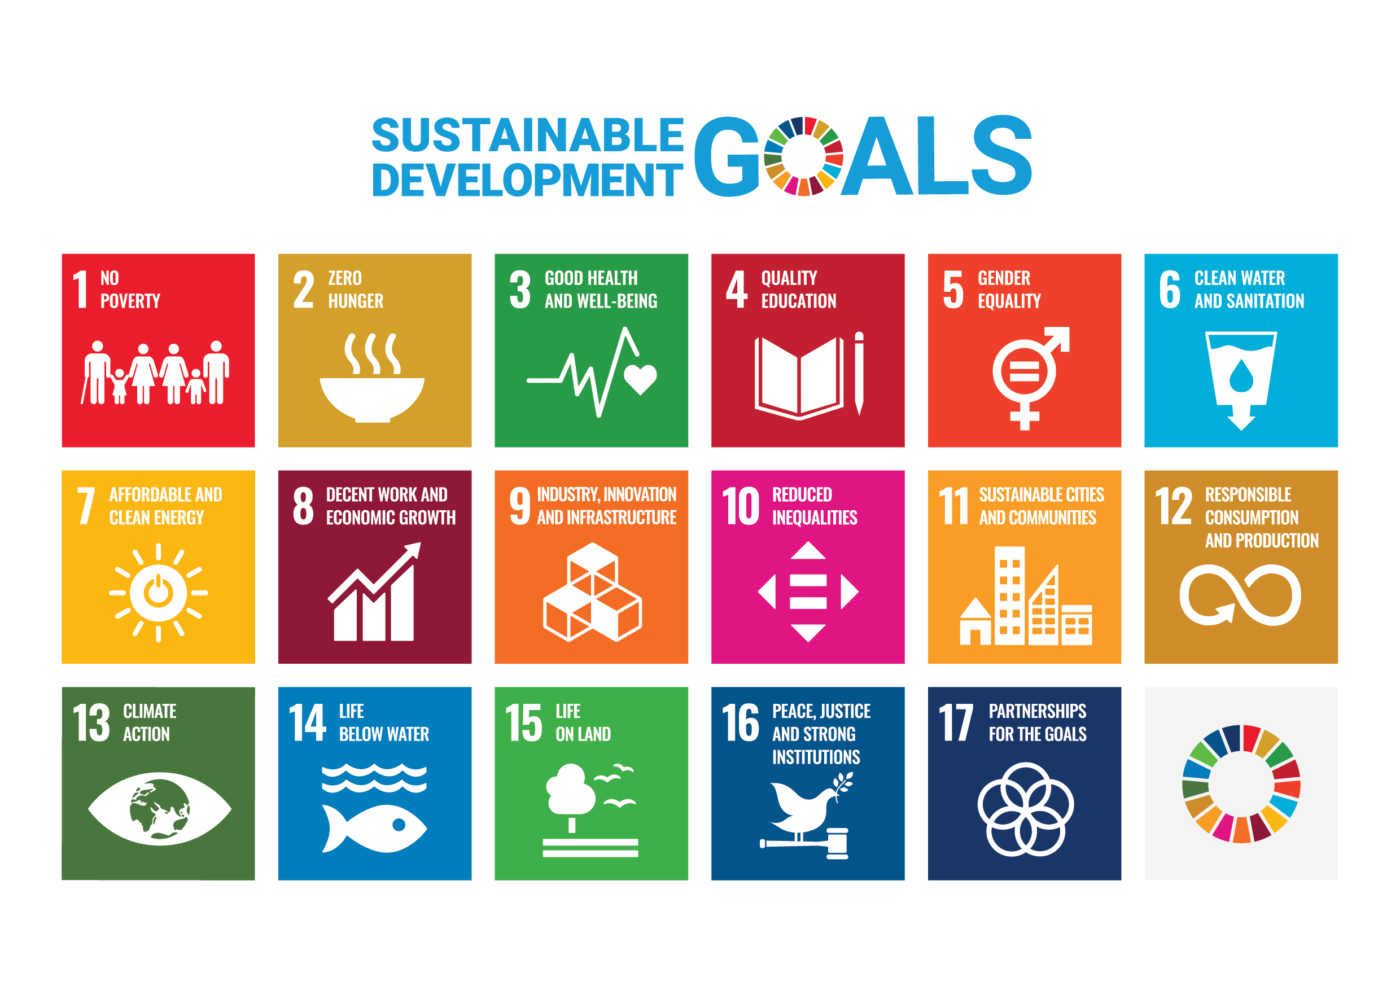 Grafische Darstellung in drei Reihen von je sechs Kacheln der insgesamt 17 Nachhaltigkeitsziele der Vereinten Nationen. Die letzte Kachel führt kreisförmig alle 17 Bereiche im jeweils zugeordneten Farbton auf.